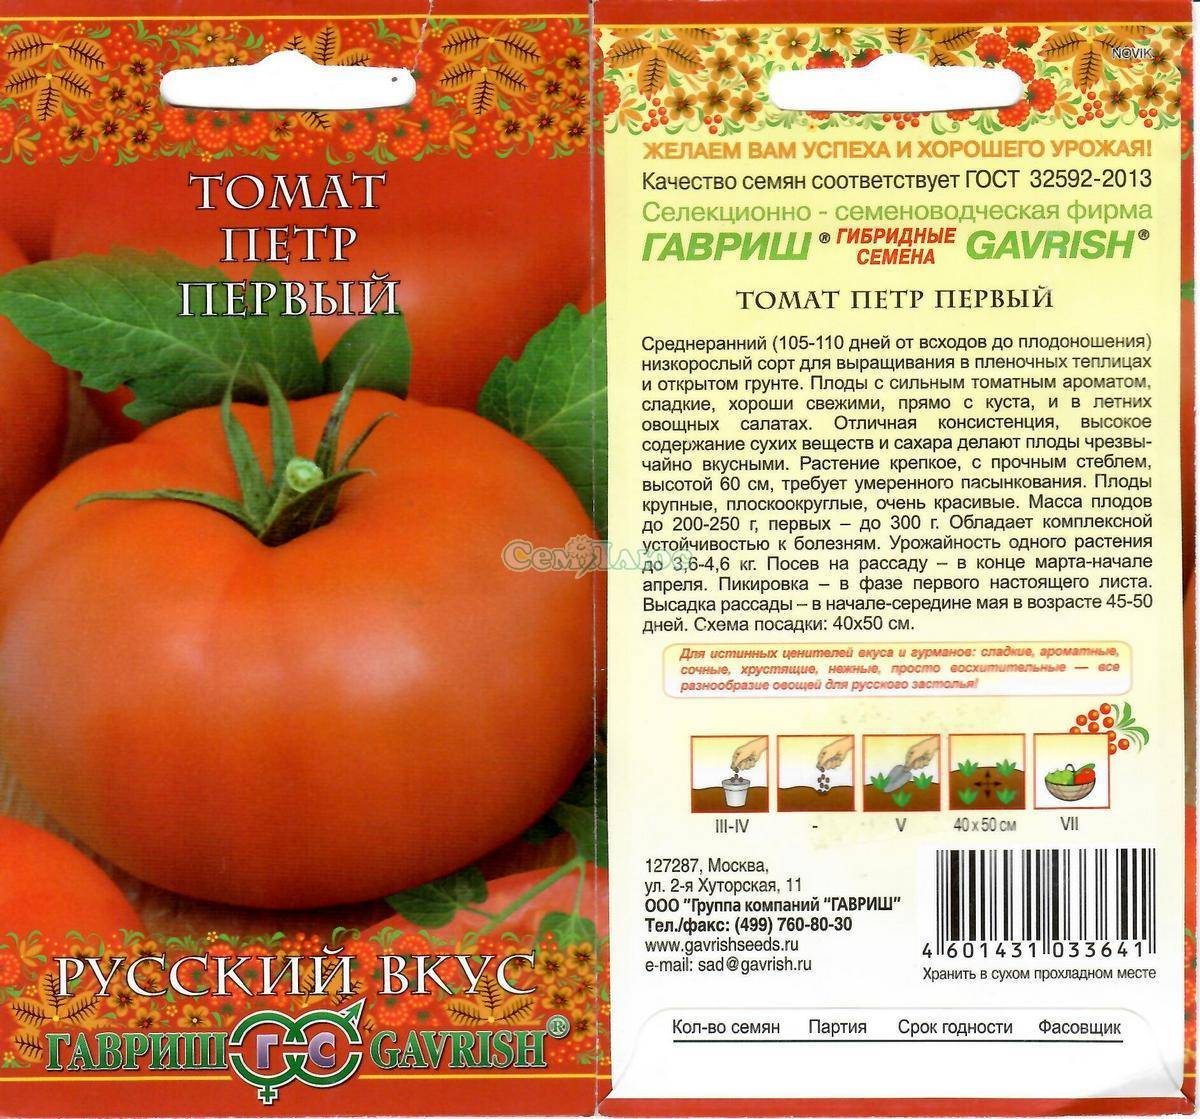 Богатырские плоды с сладким вкусом — томат илья муромец: описание сорта и его характеристики